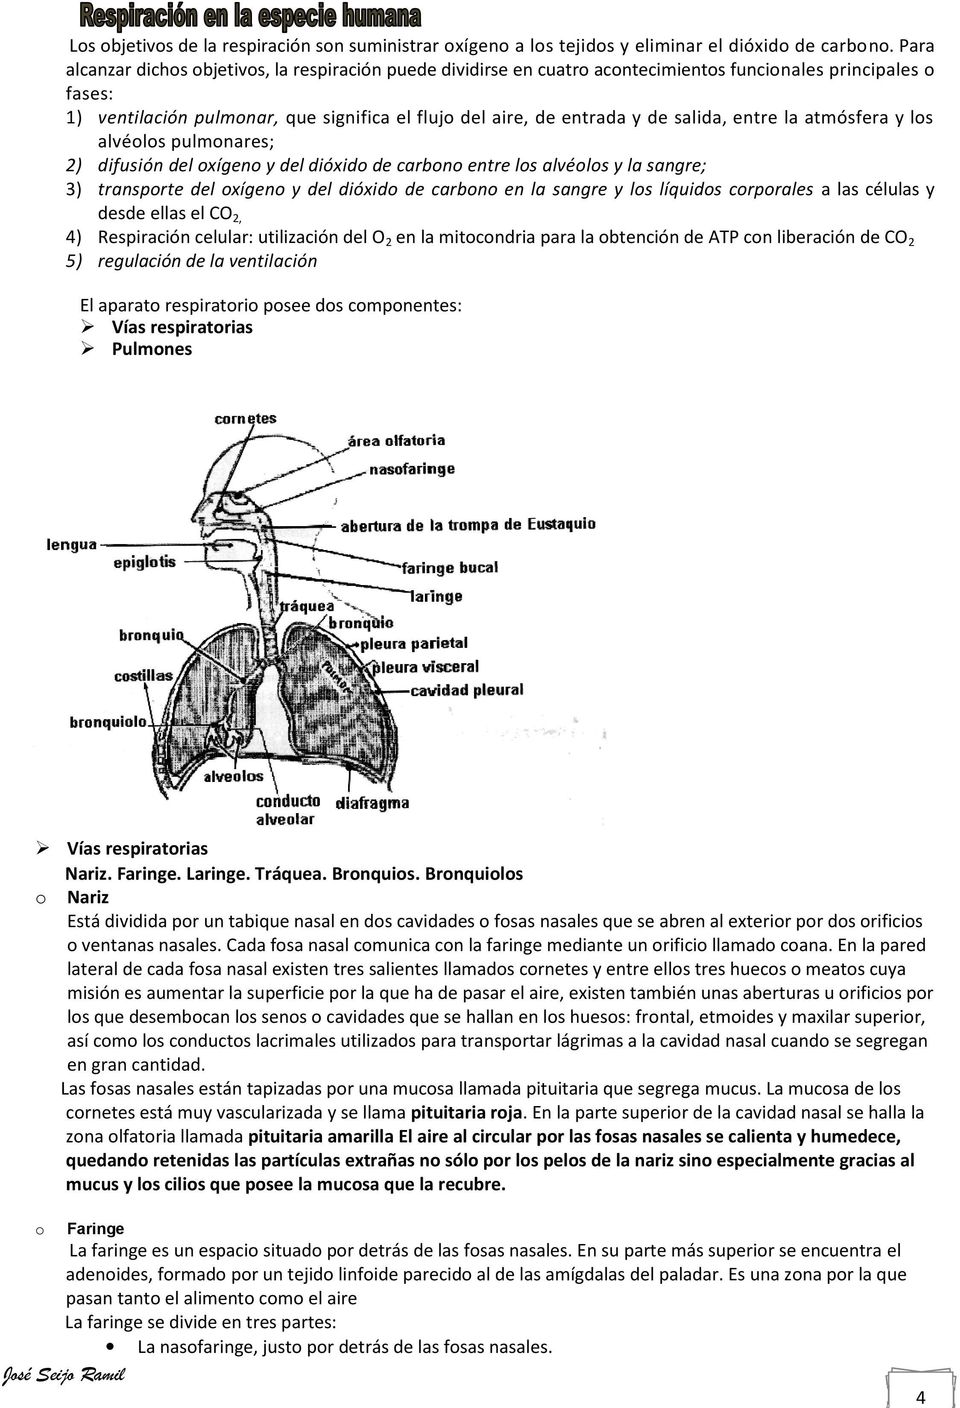 la atmósfera y ls alvéls pulmnares; 2) difusión del xígen y del dióxid de carbn entre ls alvéls y la sangre; 3) transprte del xígen y del dióxid de carbn en la sangre y ls líquids crprales a las